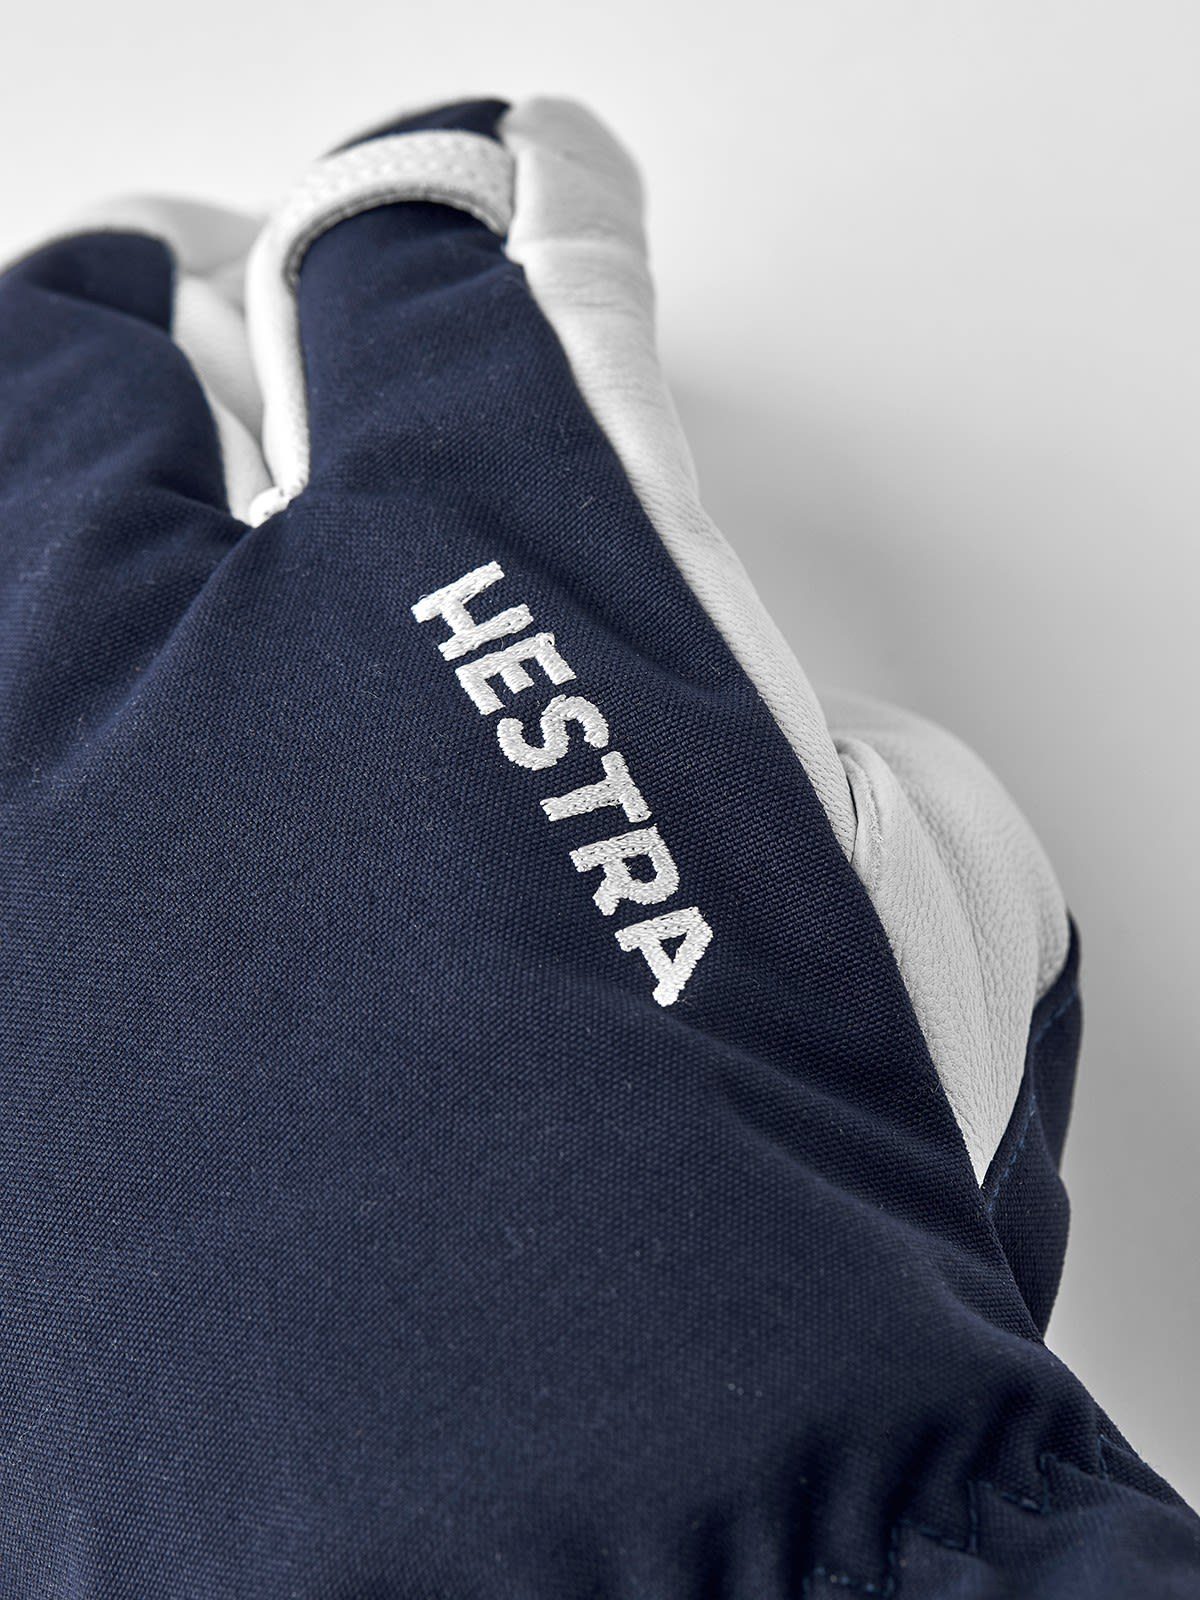 Heli Ski Fleecehandschuhe Hestra Hestra Leather Accessoires Army 3-finger